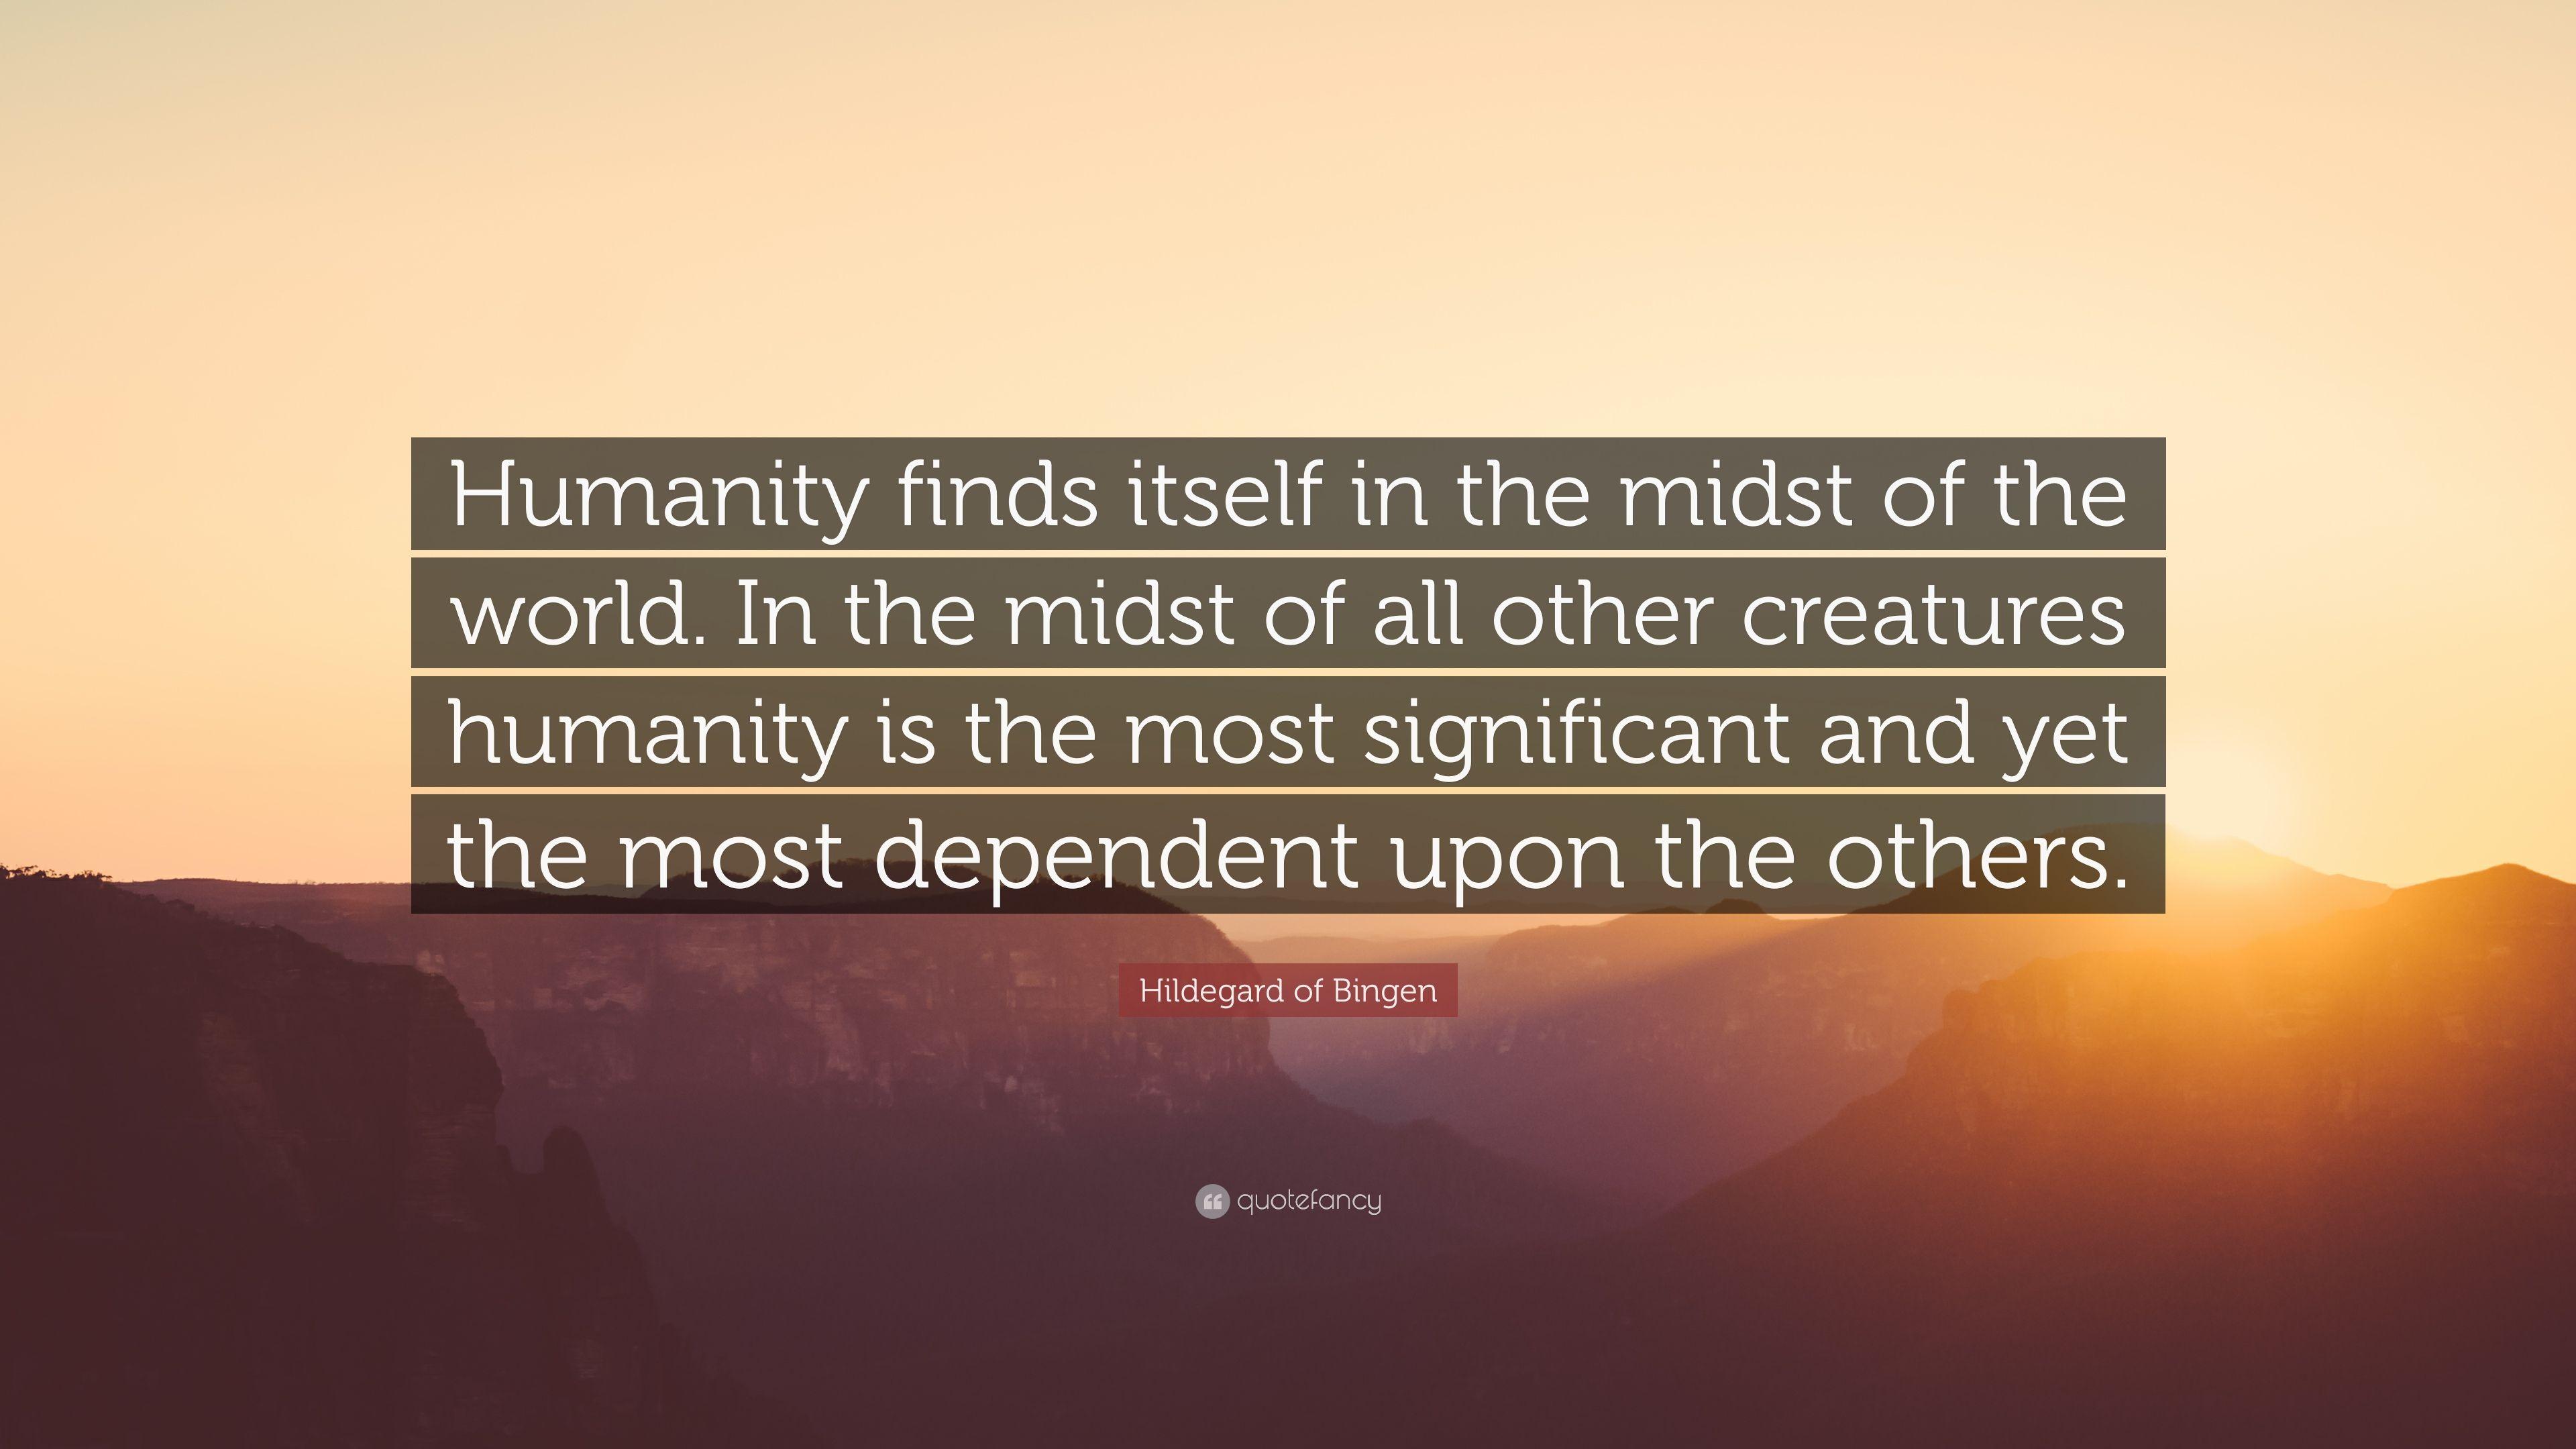 Hildegard of Bingen Quote: “Humanity finds itself in the midst